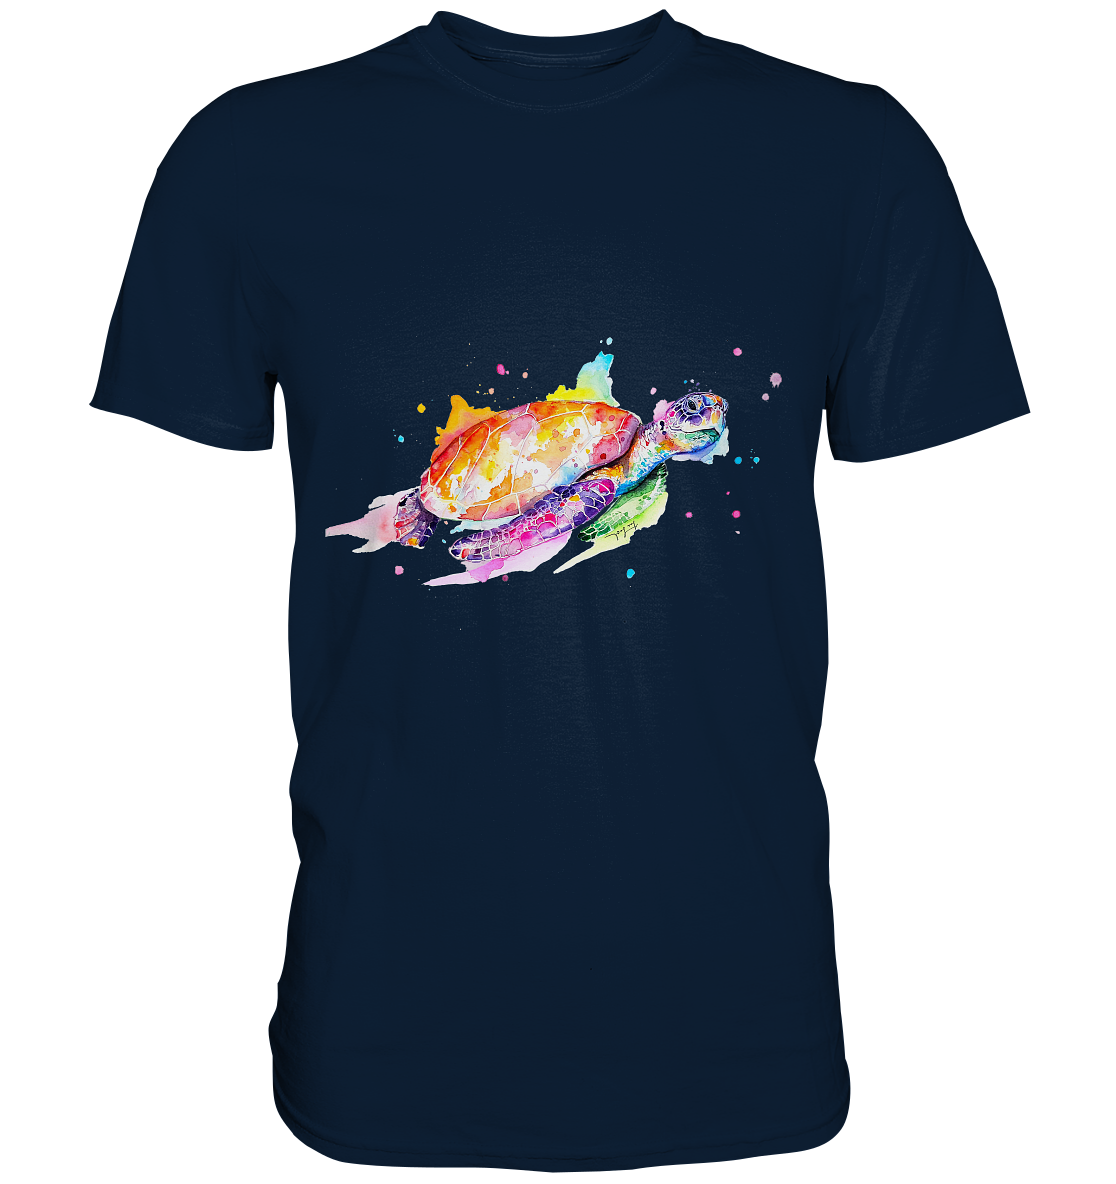 Bunte Meeresschildkröte - Premium Shirt